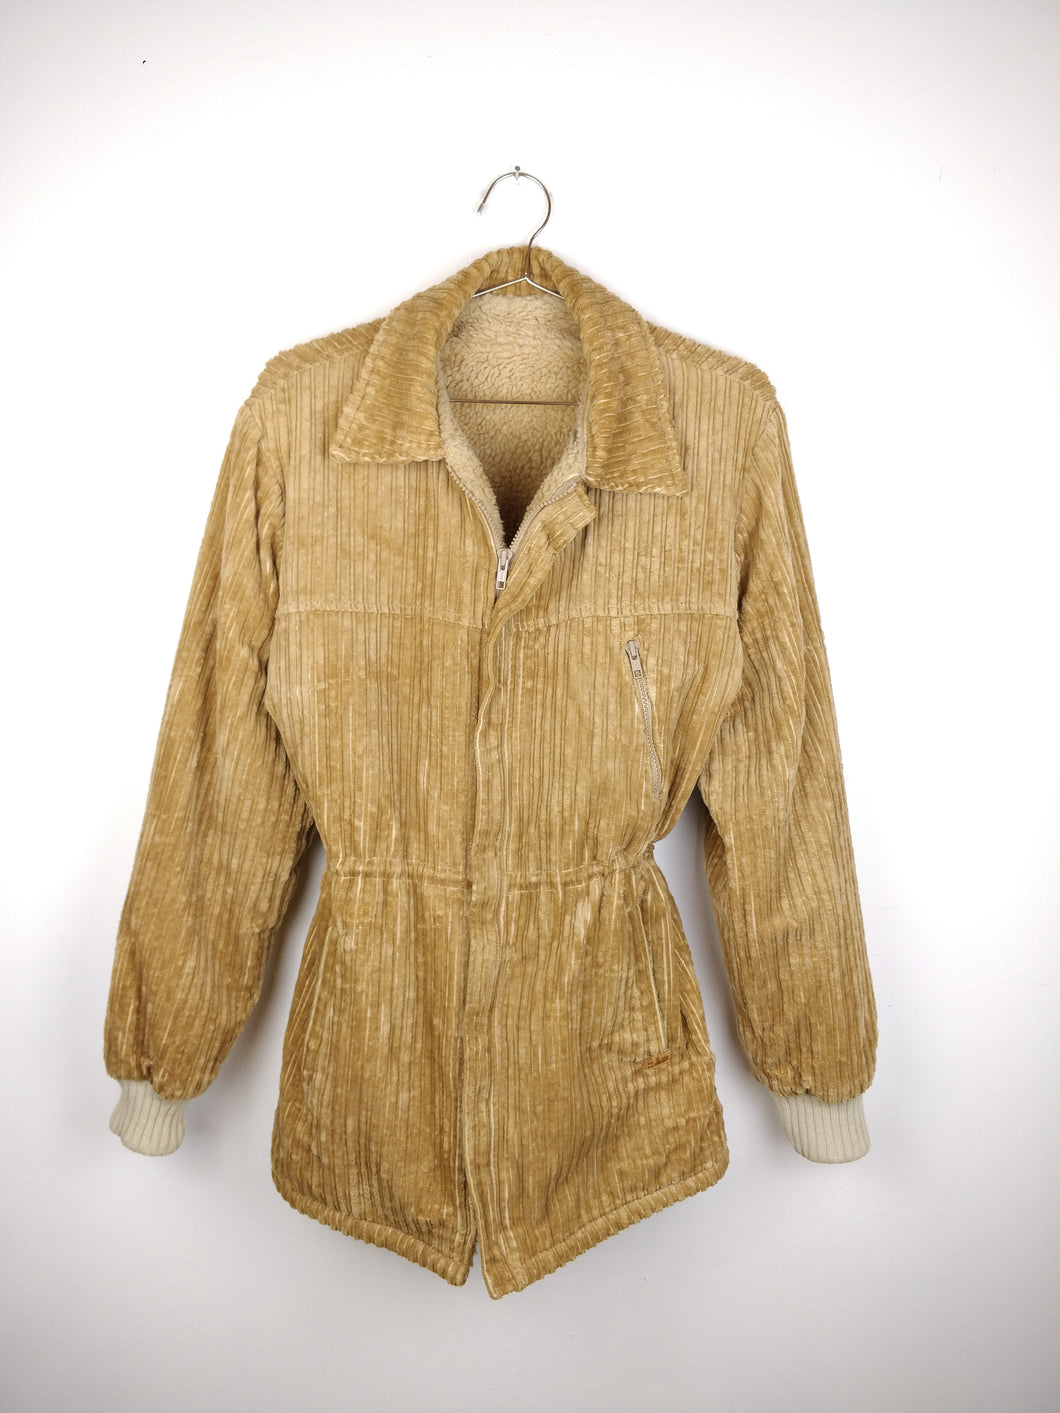 The Corduroy Teddy | Vintage brown beige teddy corduroy winter coat jacket S